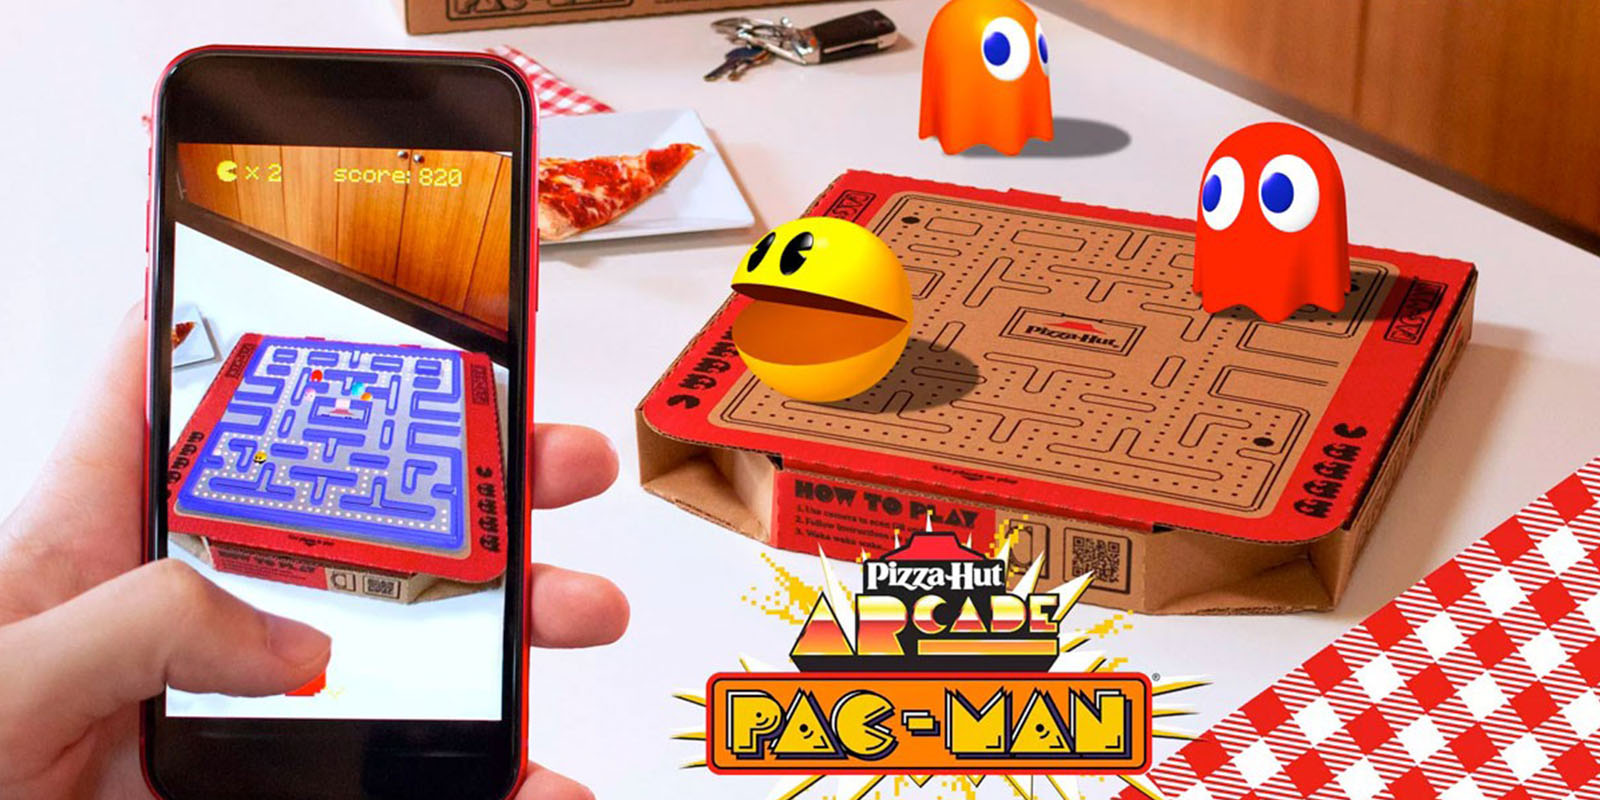 Juego de PAC-MAN ARCADE en realidad aumentada sobre una caja de pizza con el laberinto de PAC-MAN impreso. Incluye los personajes del juego y el logo de Pizza Hut.”